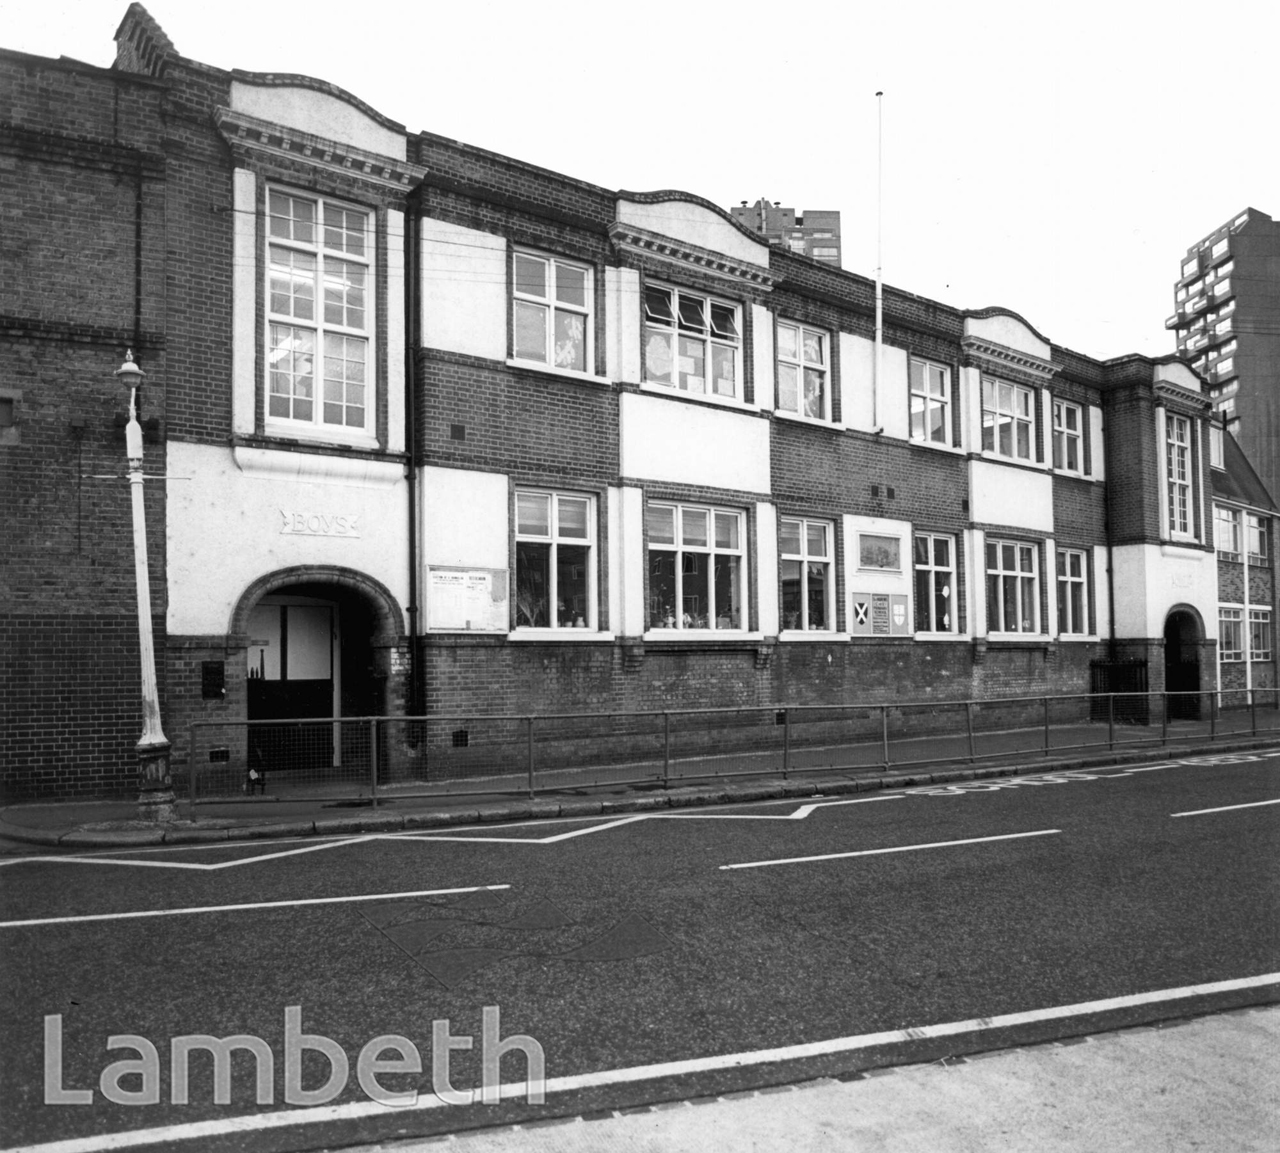 ST ANDREW'S PRIMARY SCHOOL, LINGHAM ROAD, STOCKWELL - LandmarkLandmark